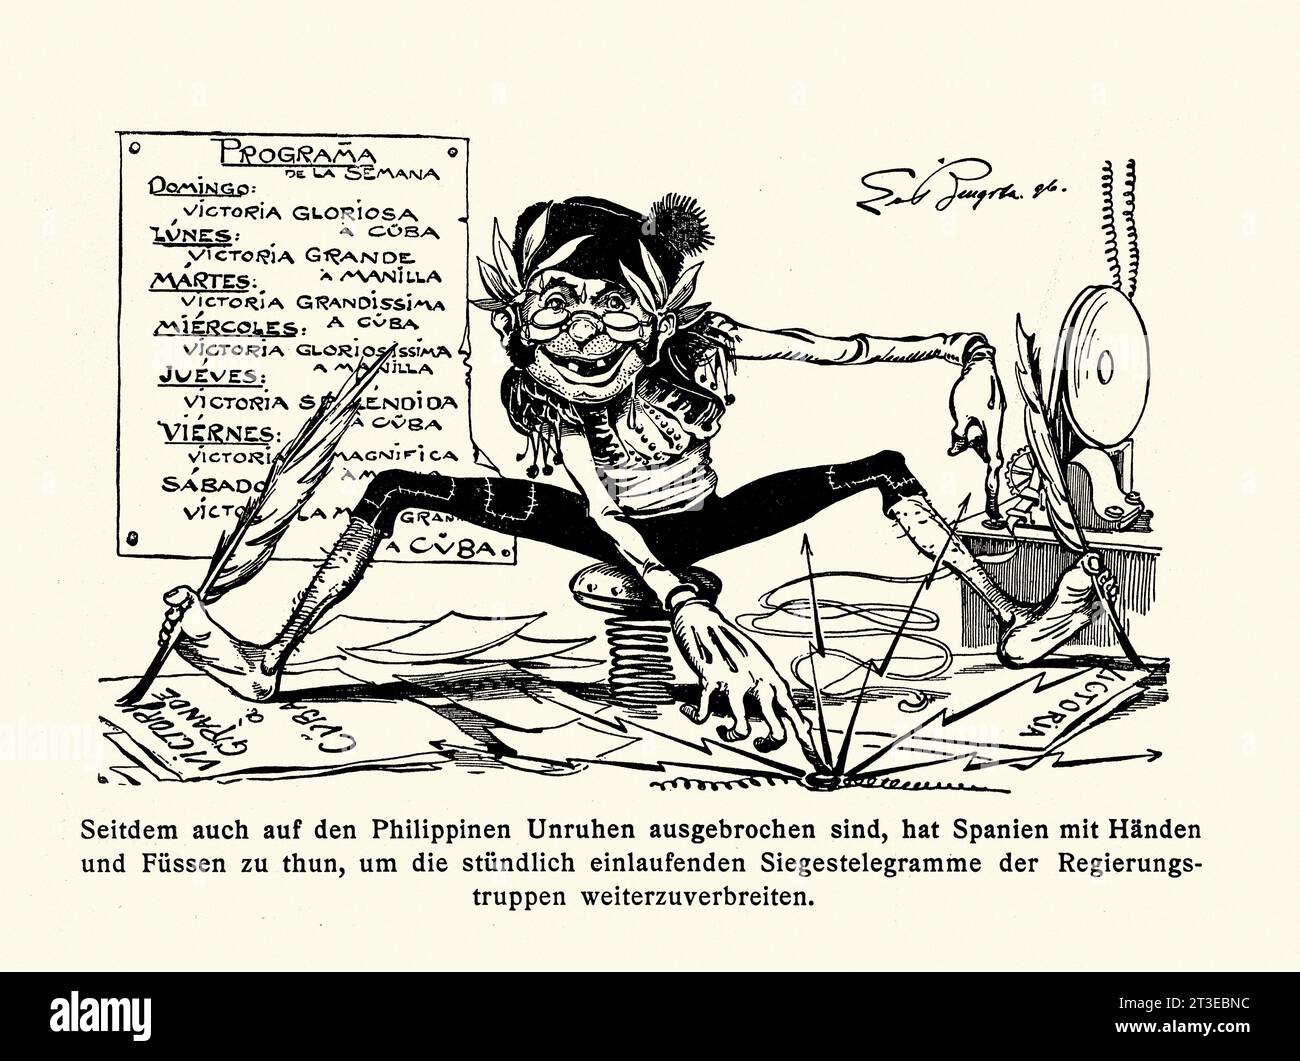 Cartone animato politico sulla rivoluzione filippina del 1896 un conflitto condotto dai rivoluzionari filippini contro le autorità coloniali spagnole nel tentativo di conquistare l'indipendenza dell'arcipelago. Foto Stock